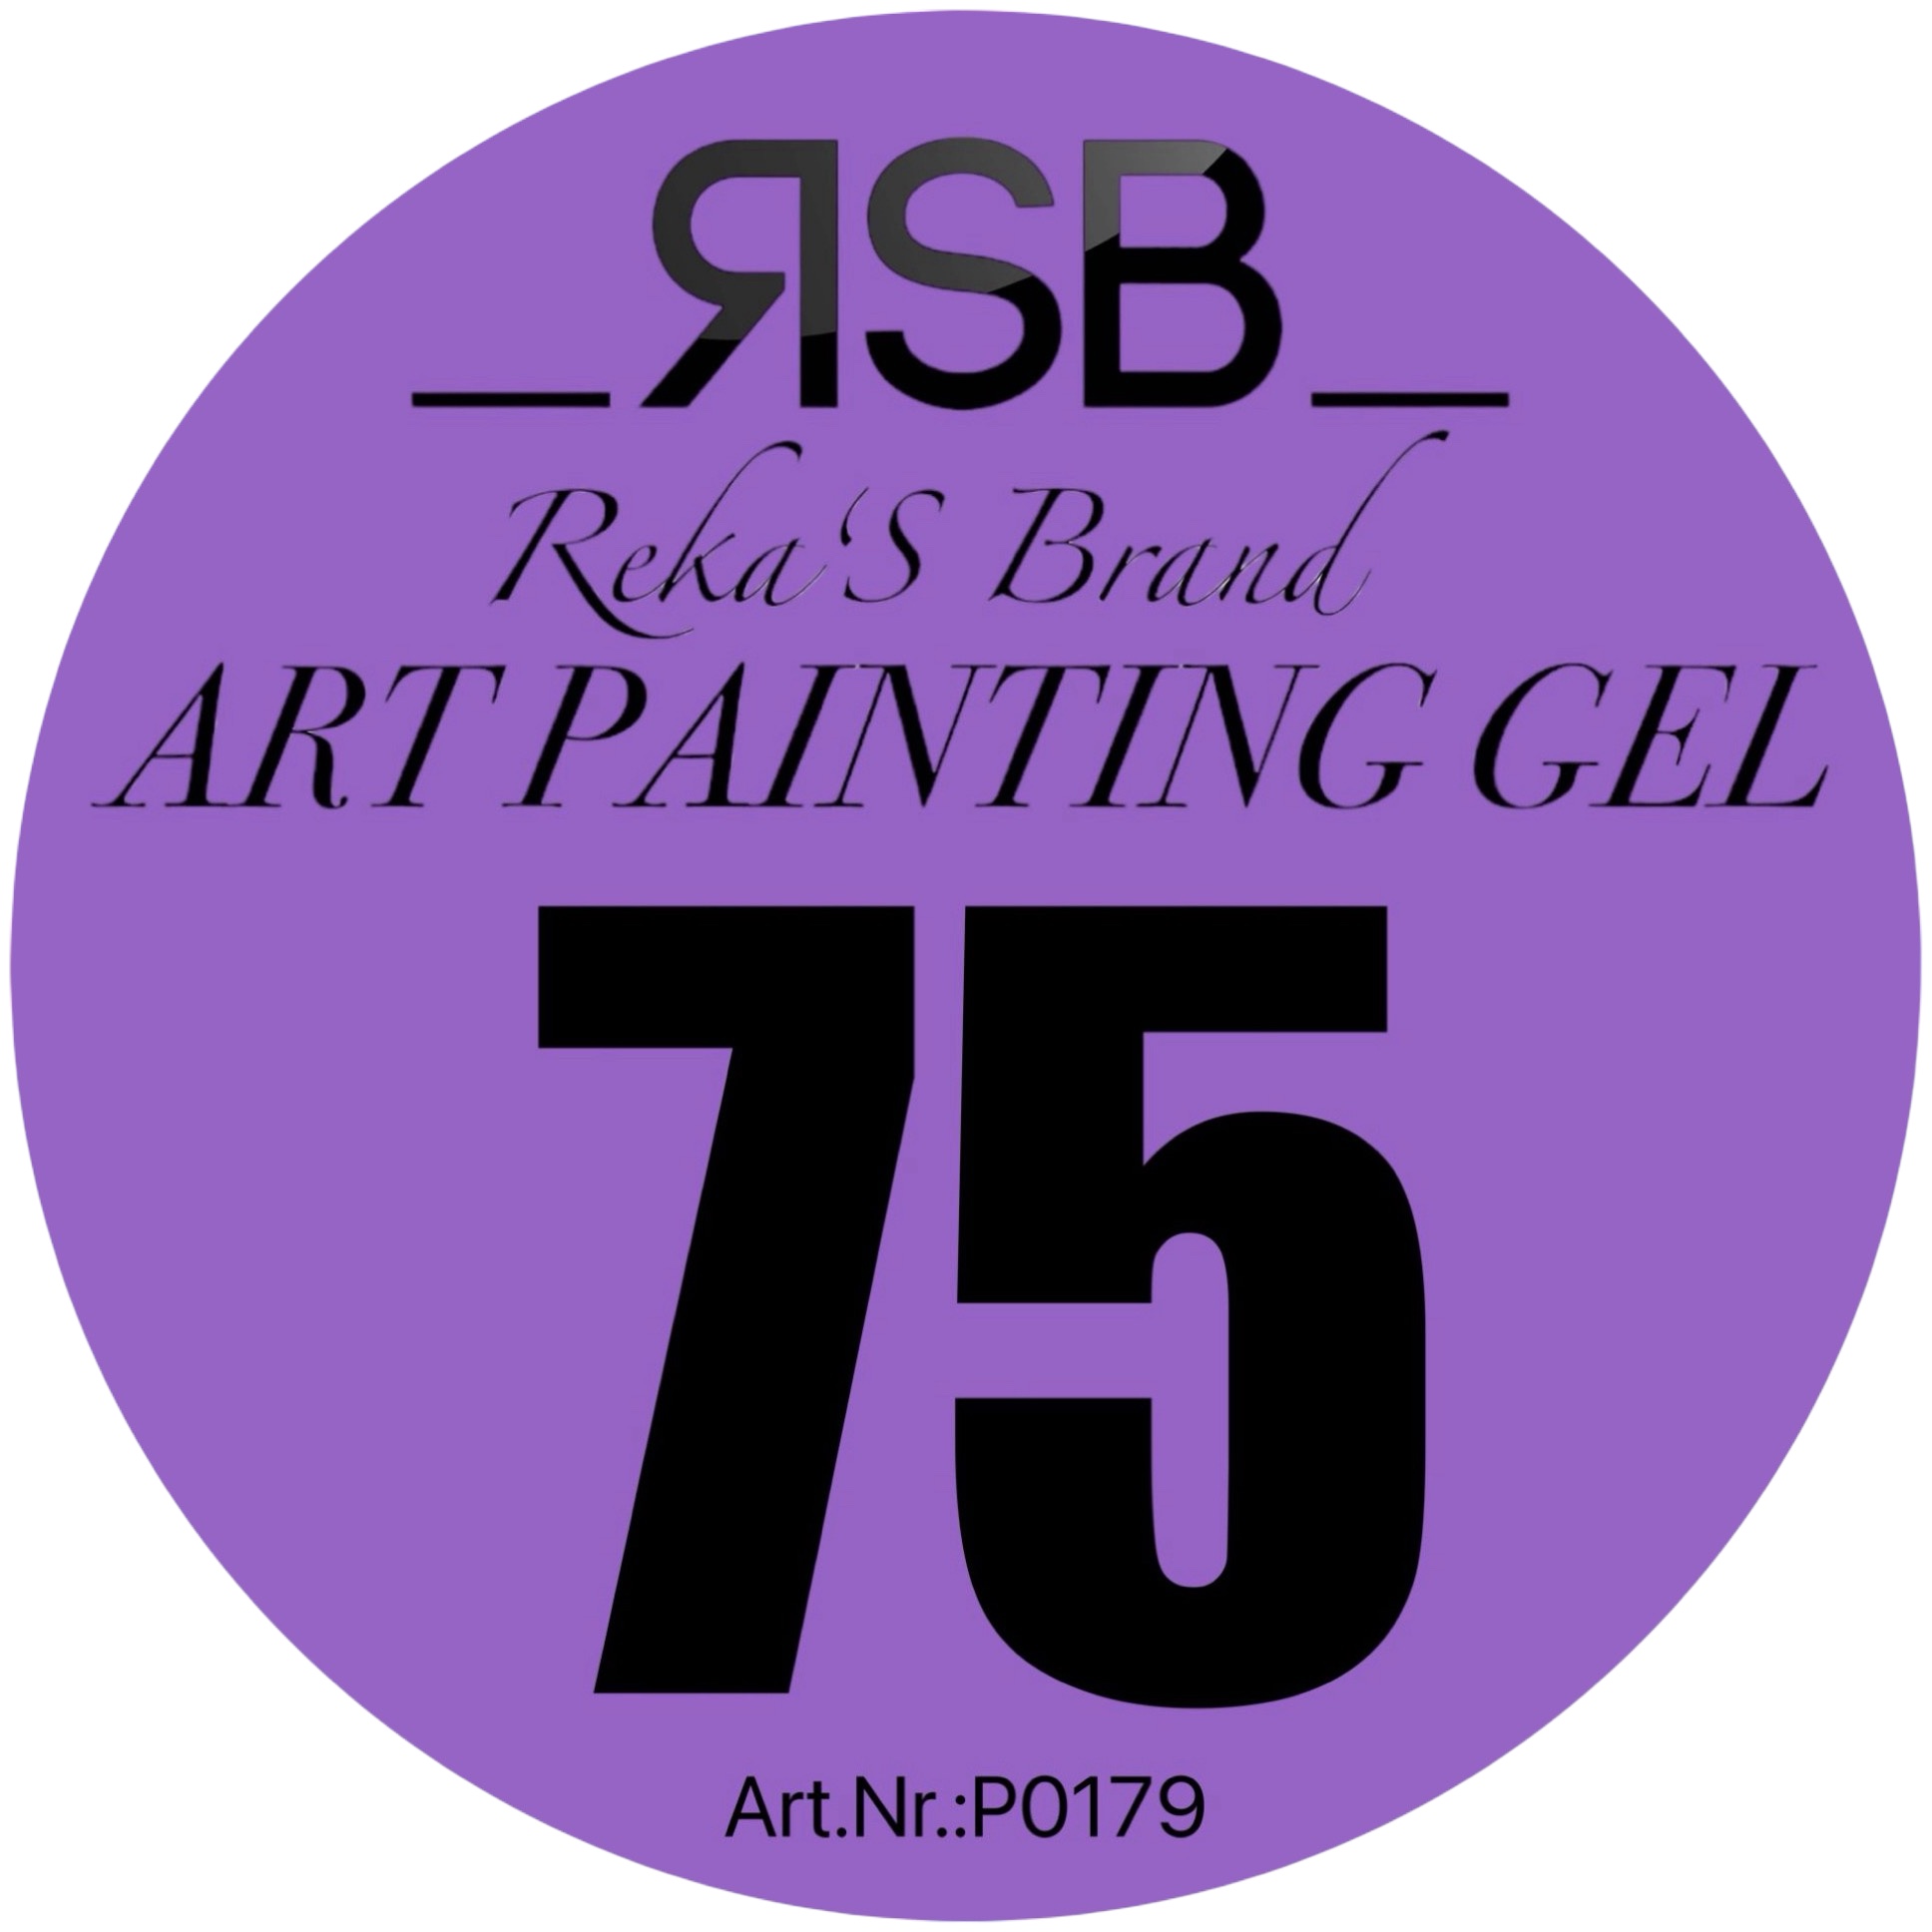 ART PAINTING GEL 75